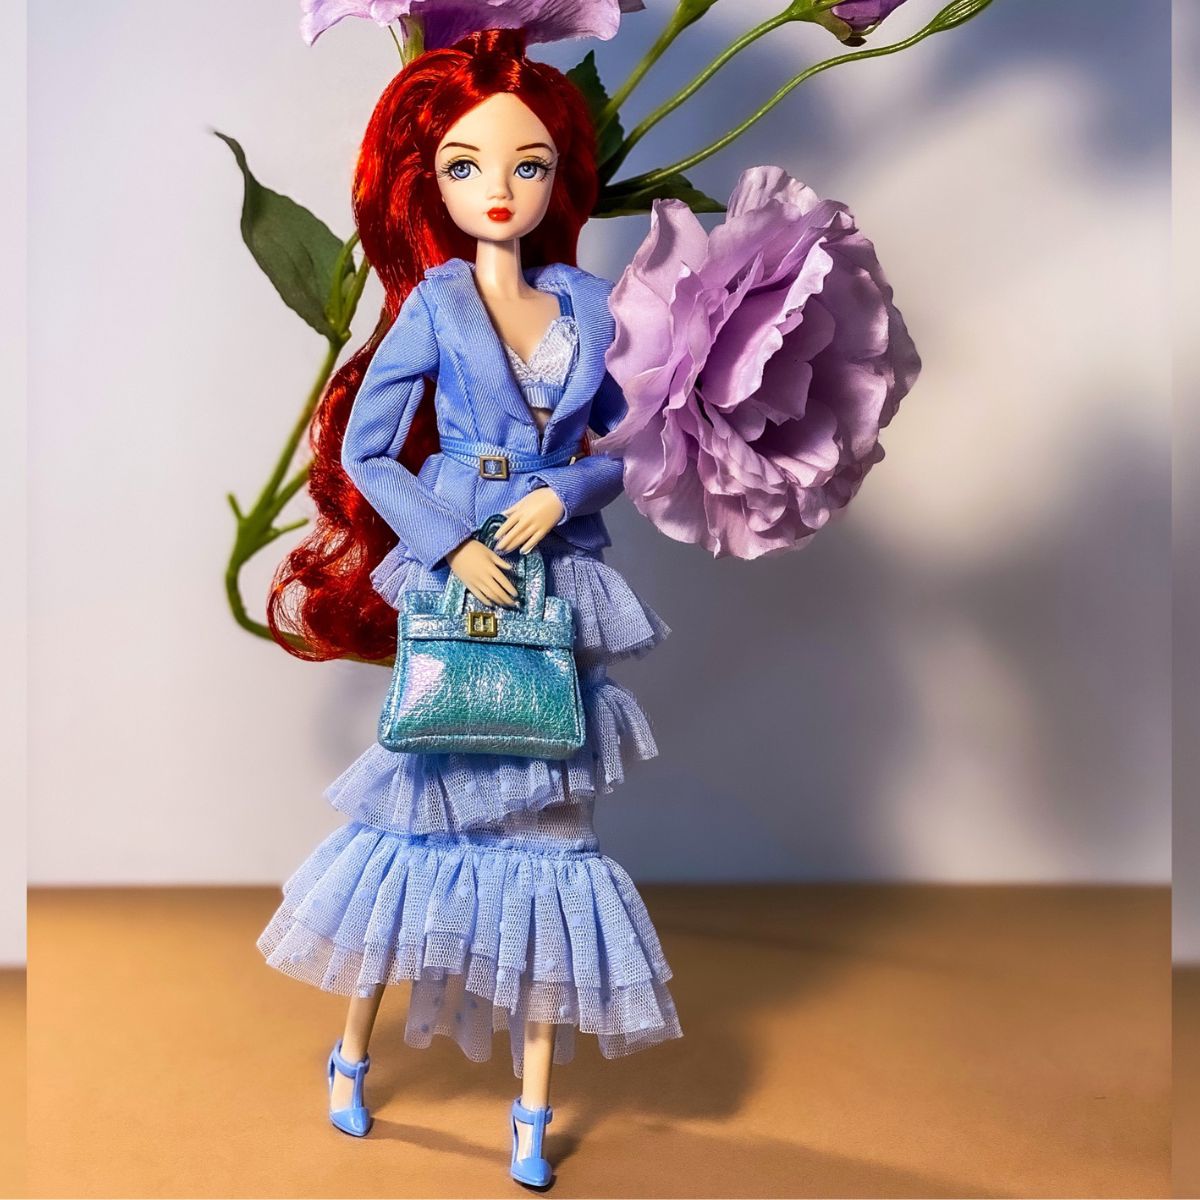 Lou Lou Le Grande (Extravaganza) Collectible Doll by Ella Superstarr - Simon's Collectibles